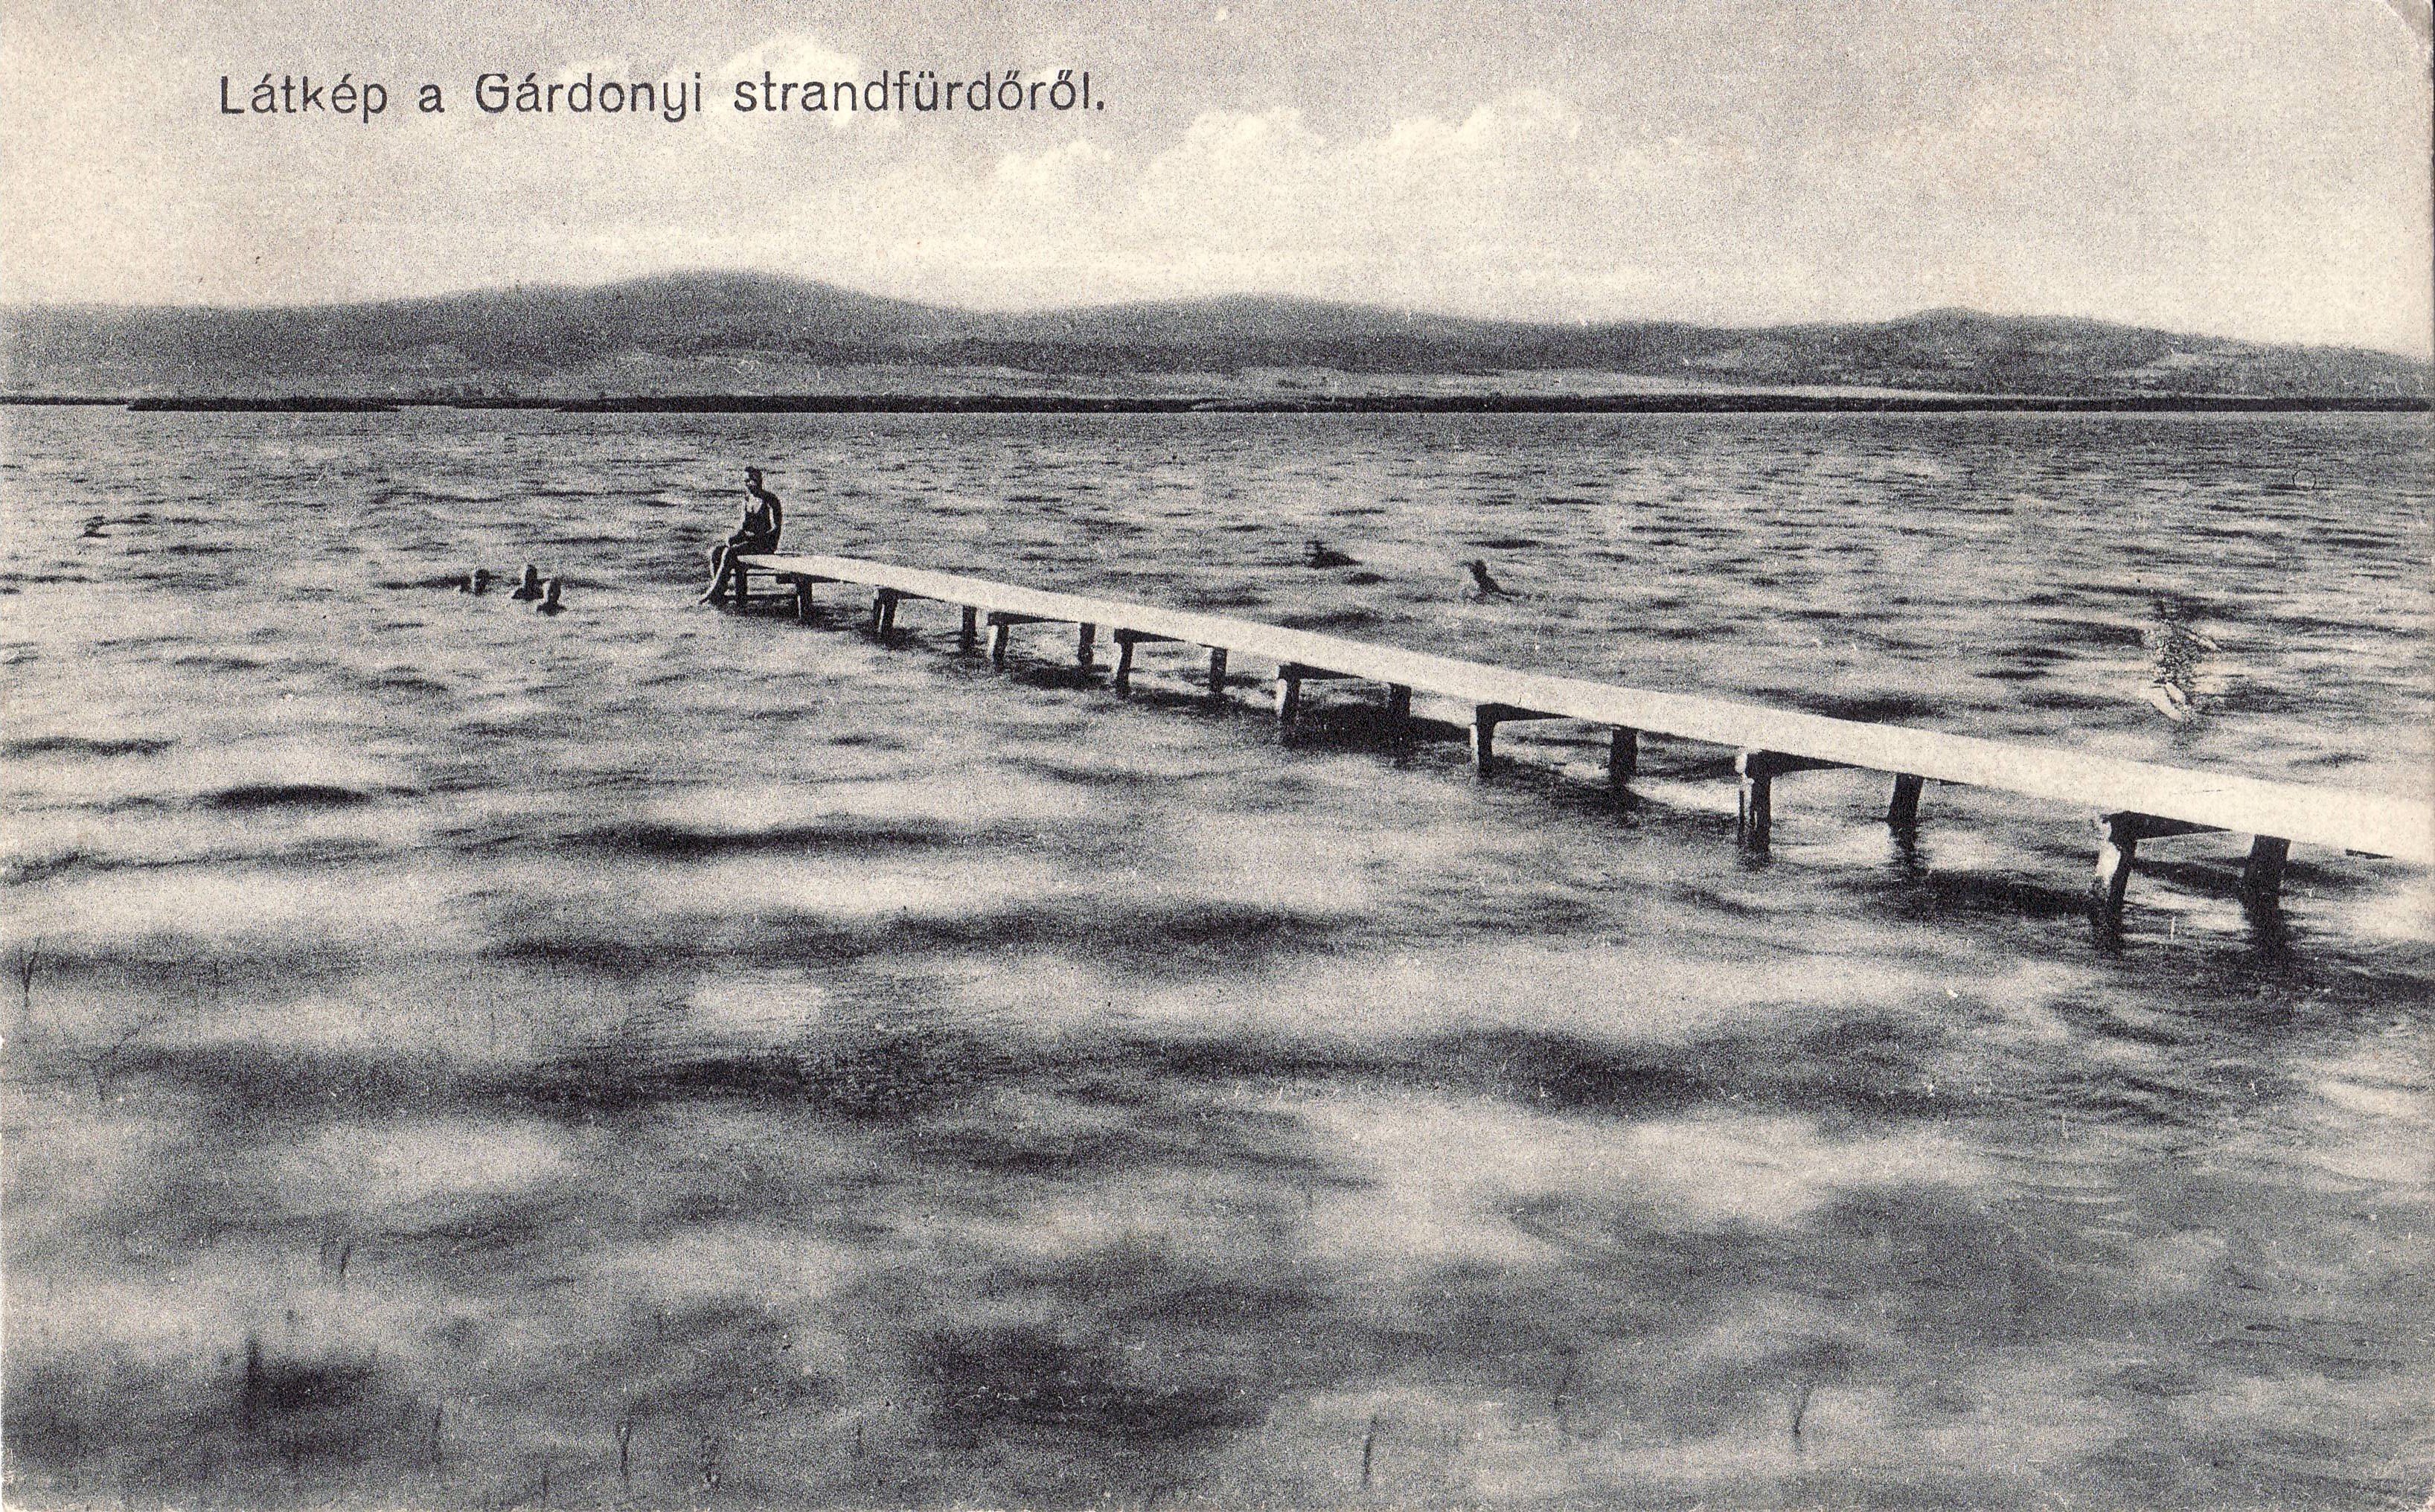 Látkép a Gárdonyi strandfürdőből (Magyar Környezetvédelmi és Vízügyi Múzeum - Duna Múzeum CC BY-NC-SA)